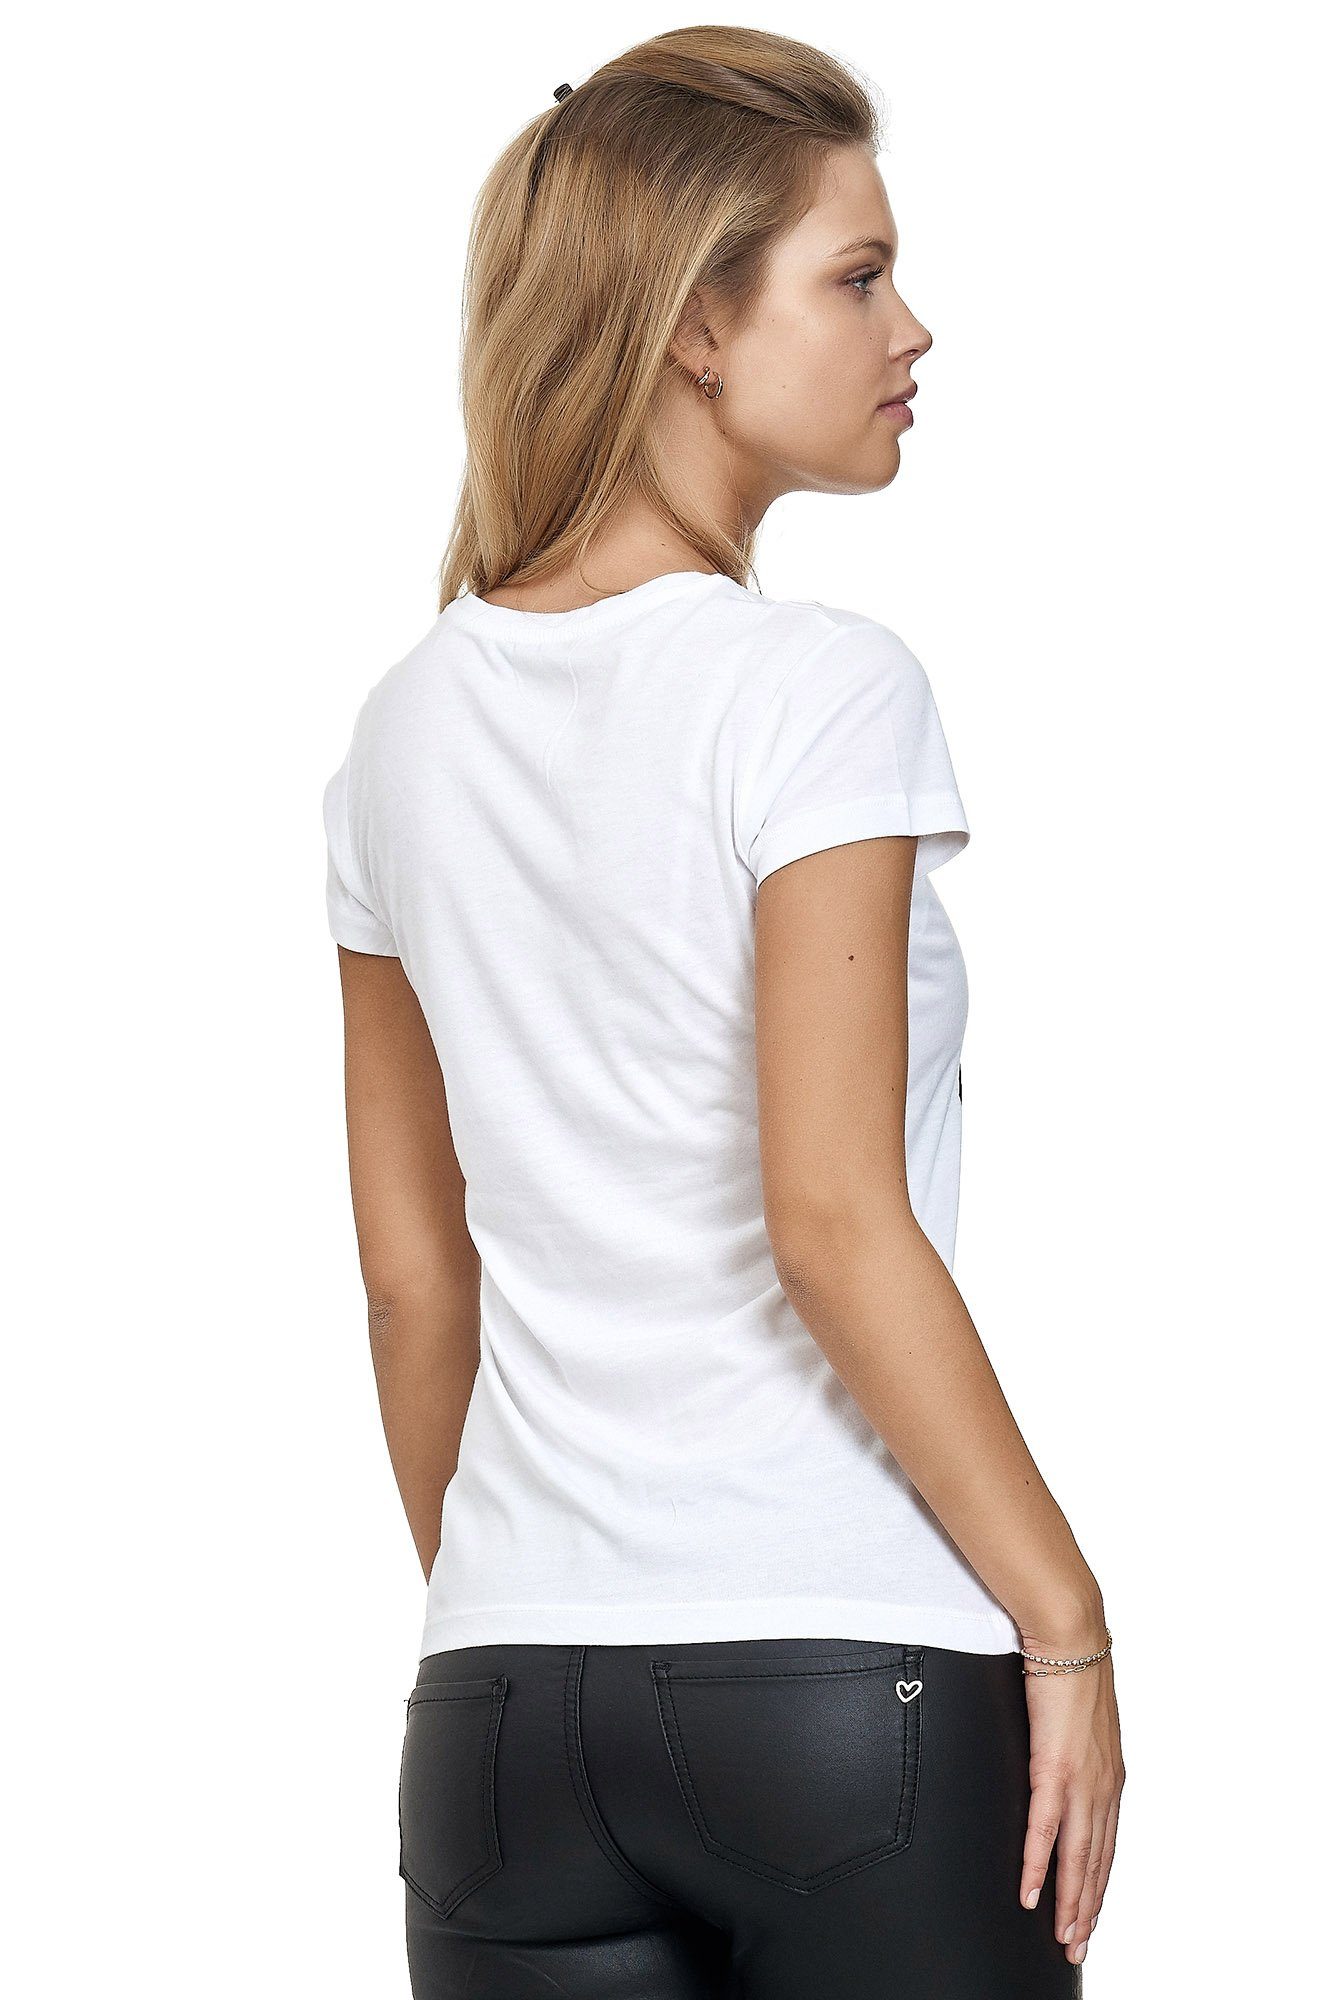 Frontprint mit glänzendem T-Shirt Decay weiß